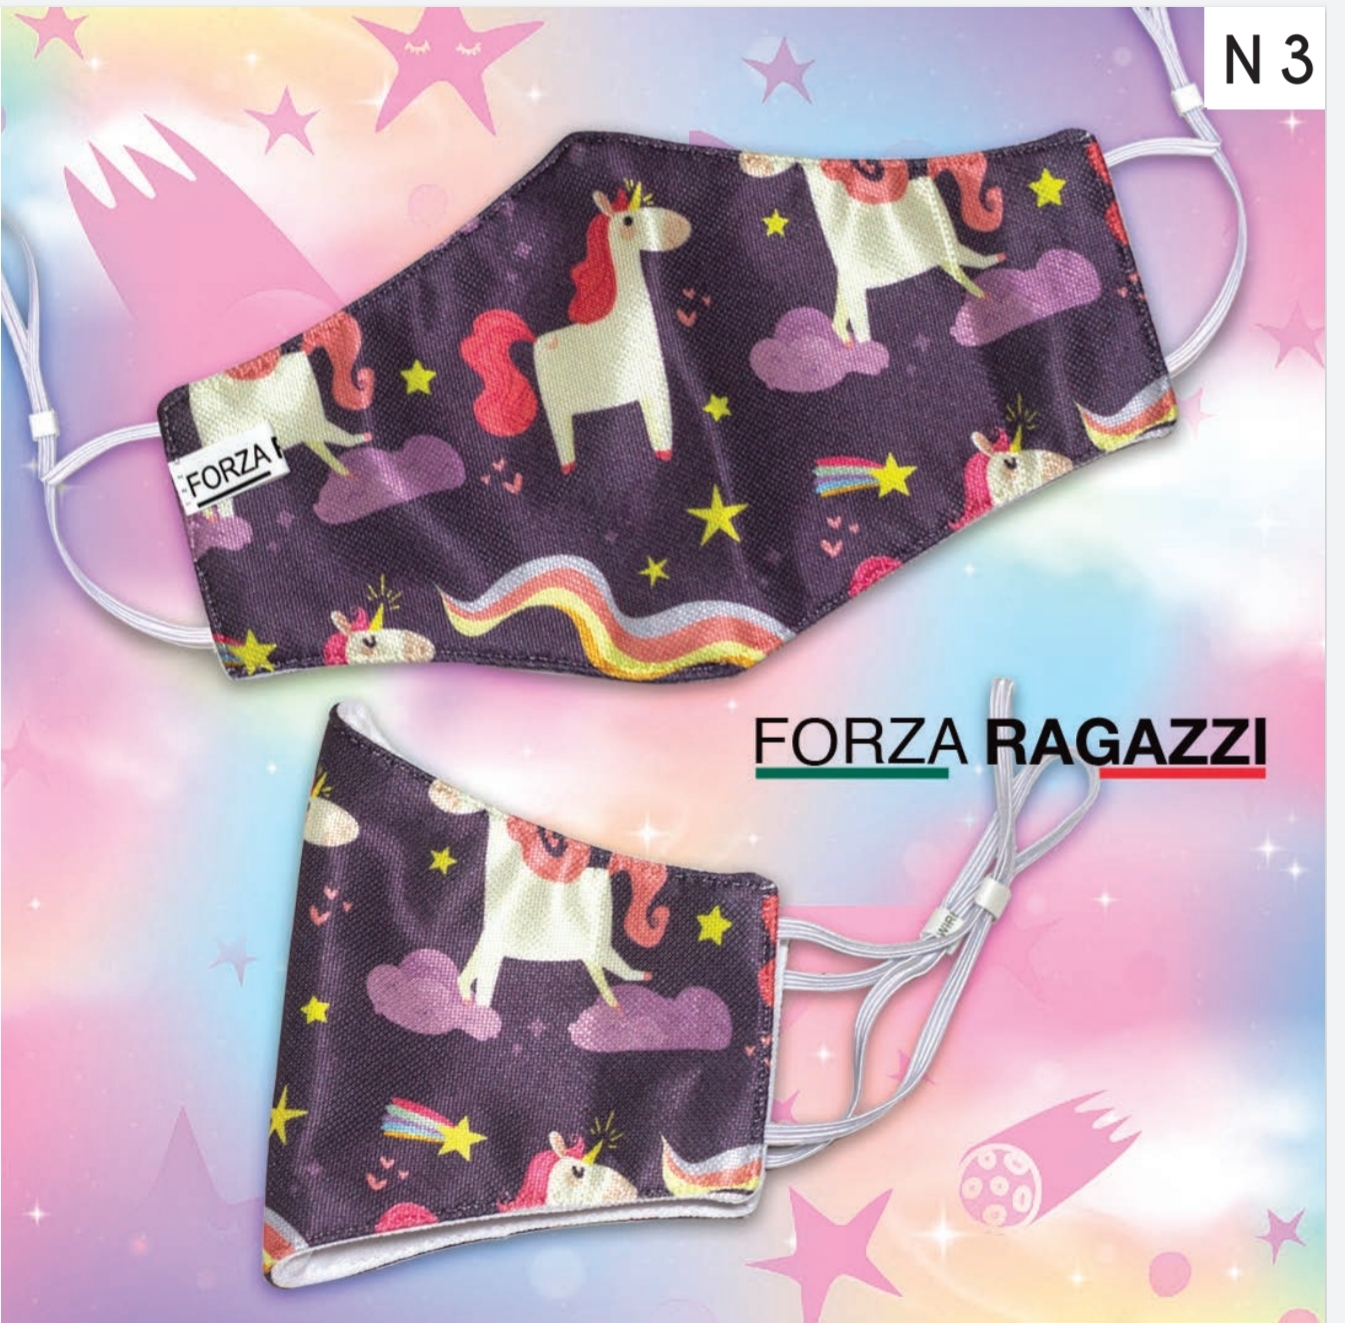 FORZA RAGAZZI CLOTH MASK N3